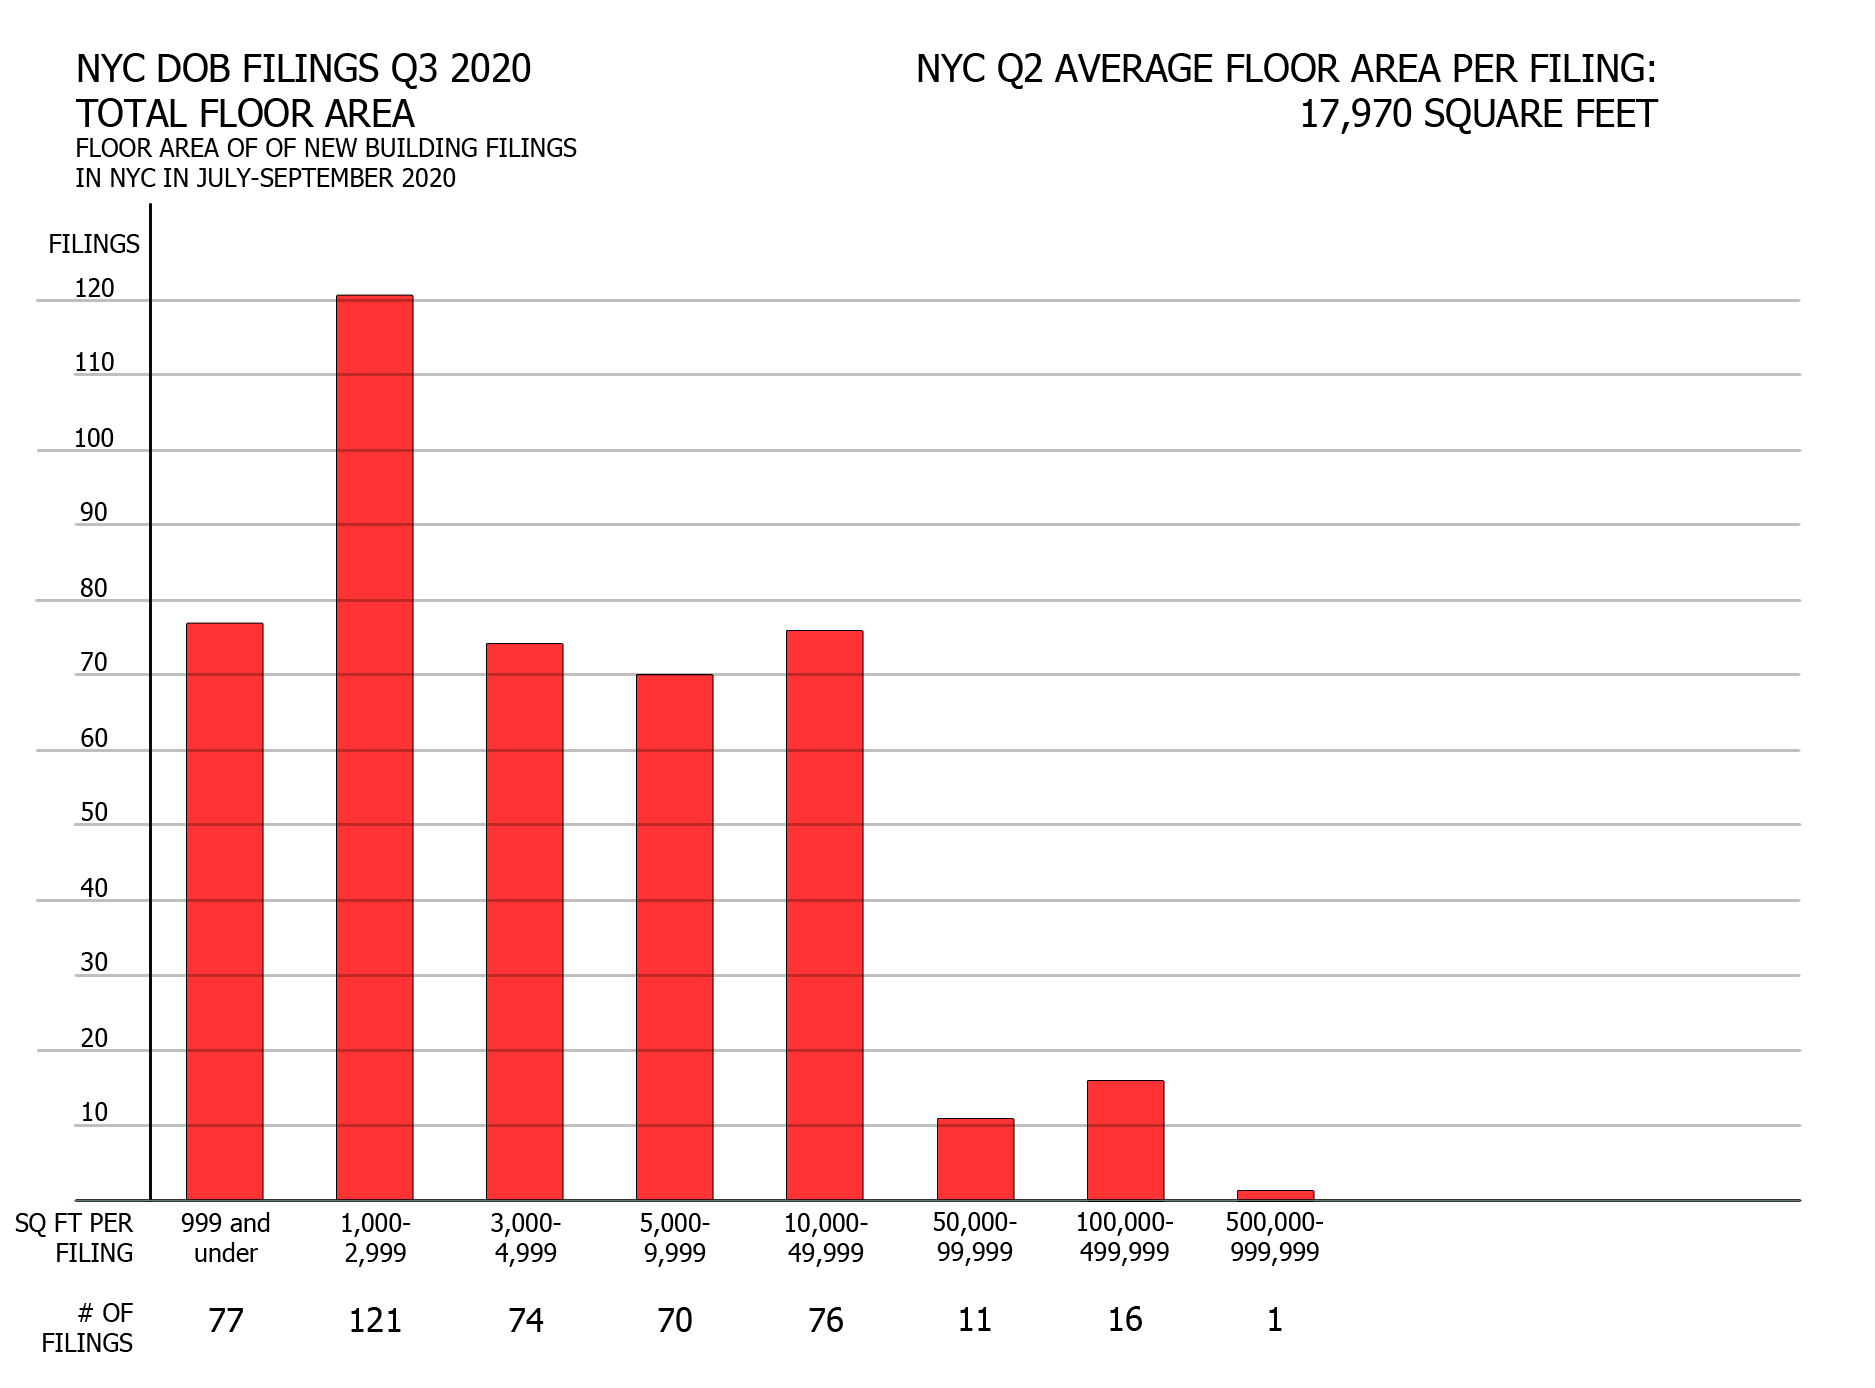 NYC DOB filings in Q3 2020 by floor area. Credit: Vitali Ogorodnikov